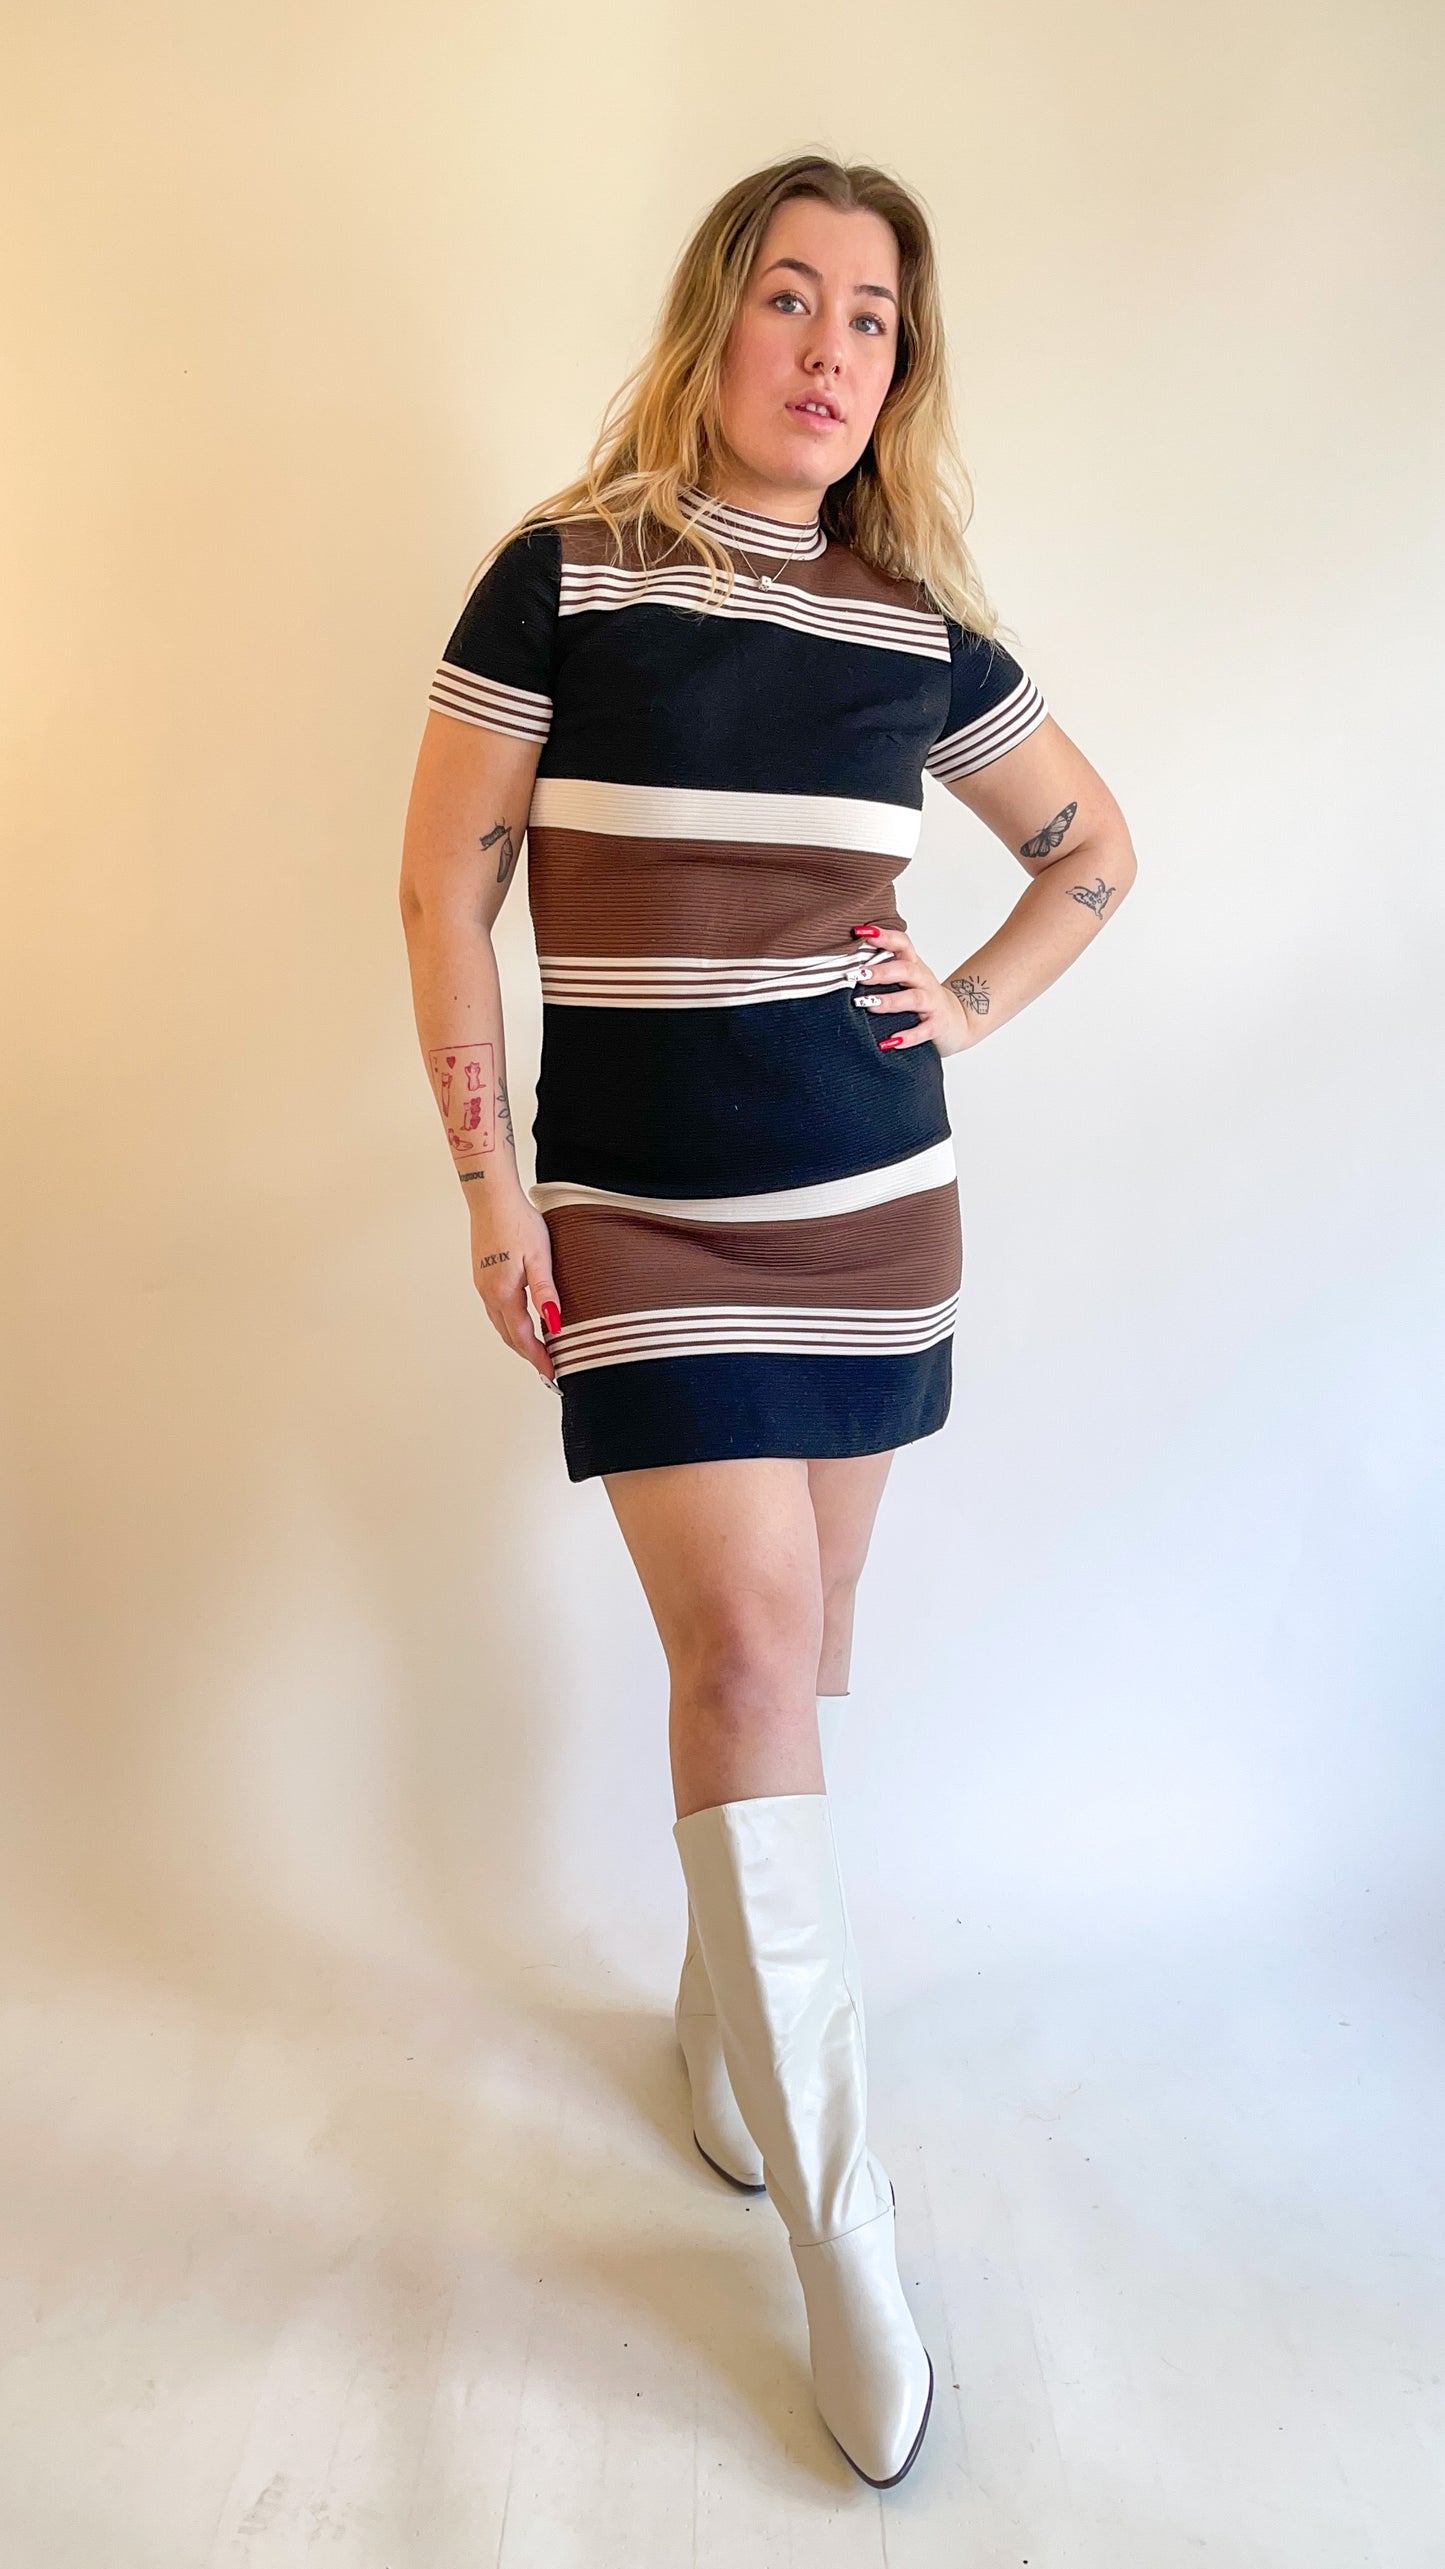 60s Neutral Striped Mini Dress (M)